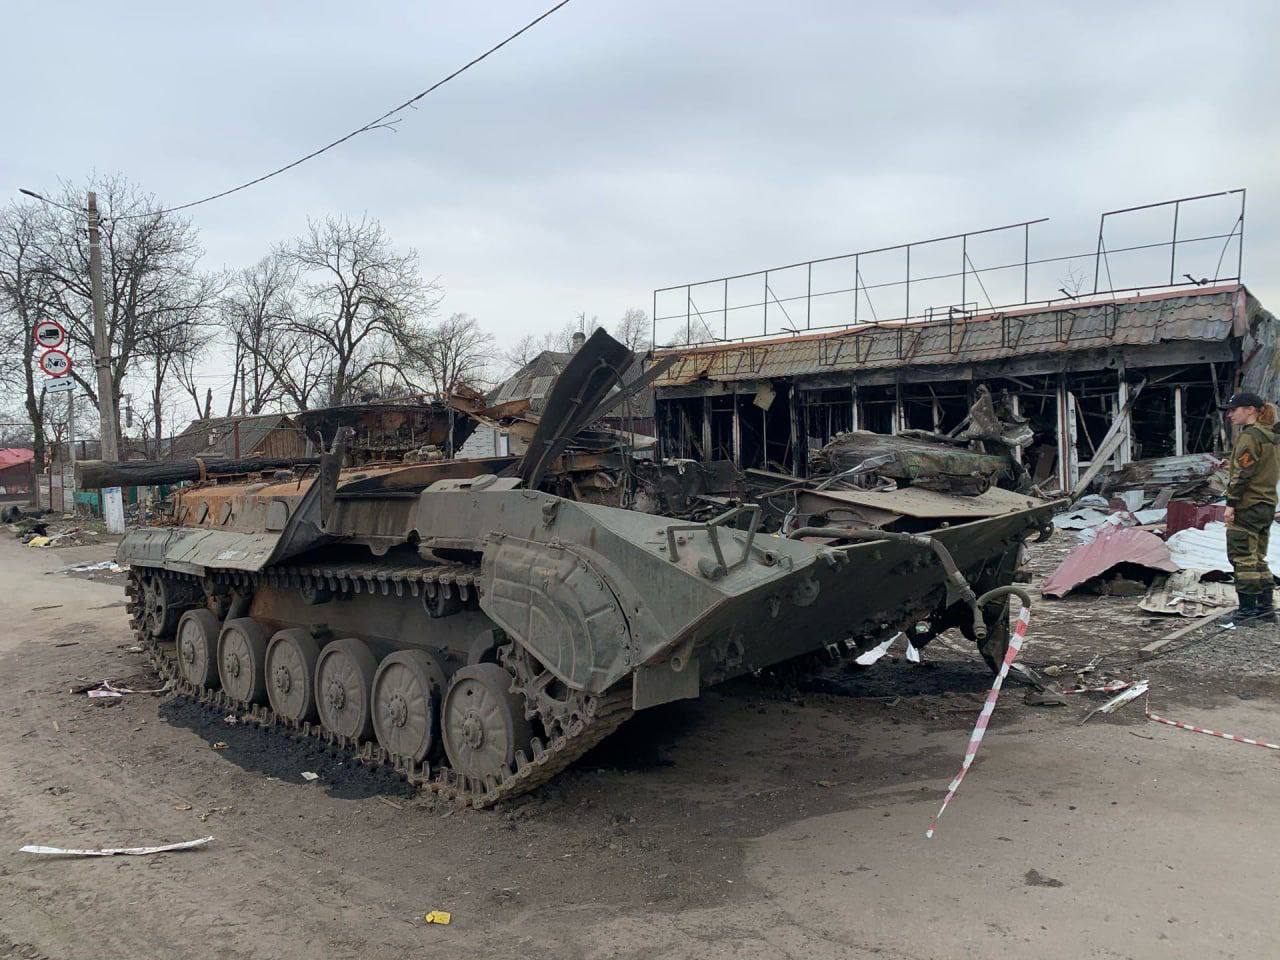 Новости украины сегодня хроника боевых действий